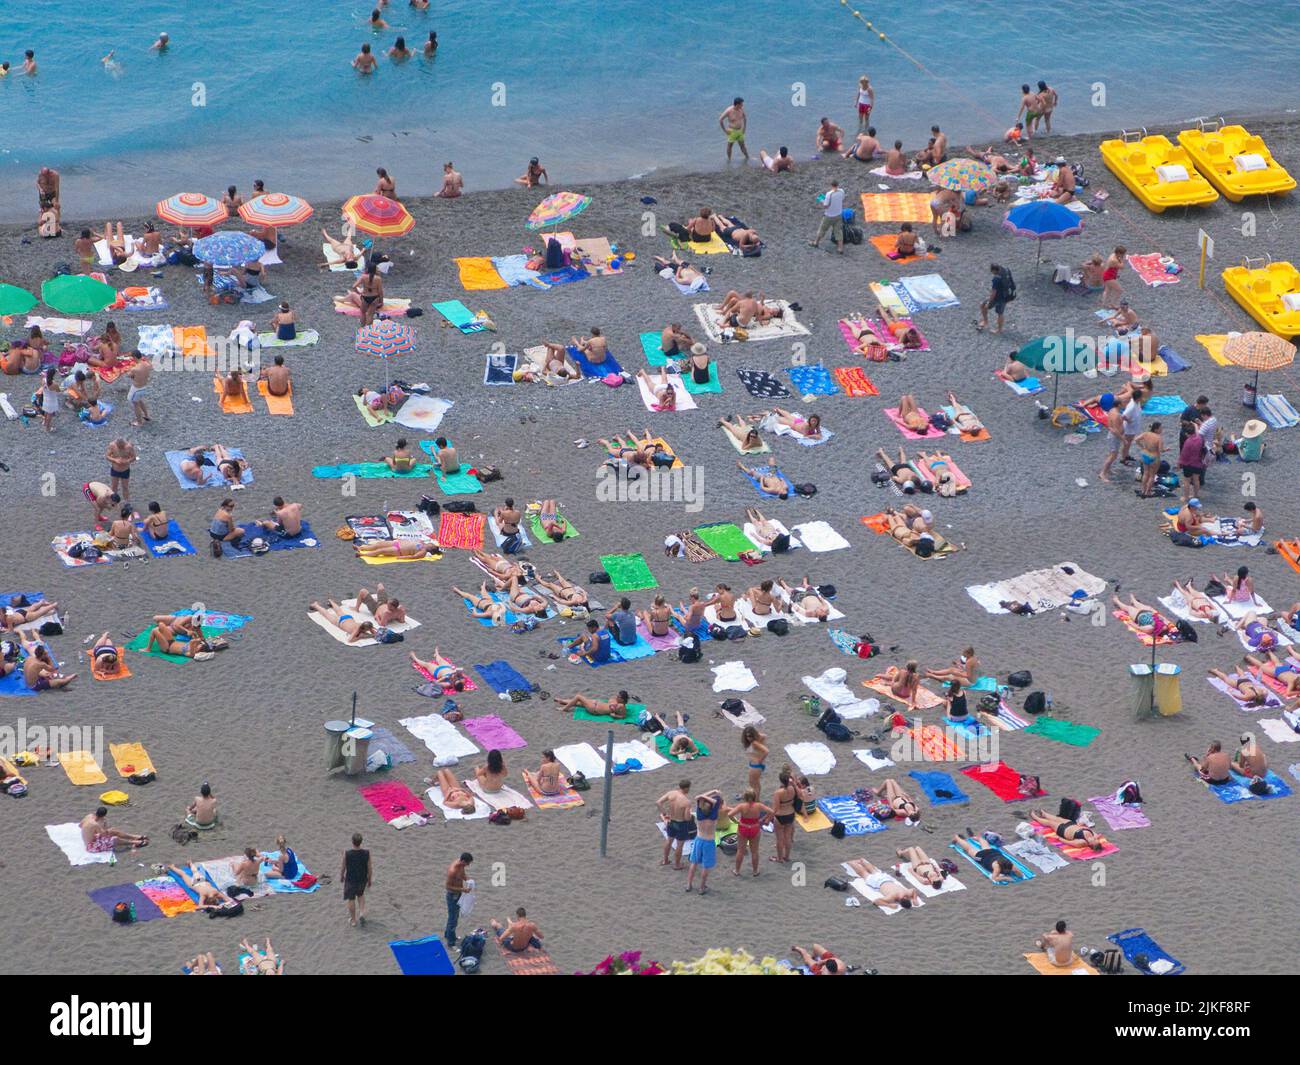 Villeggianti sulla spiaggia di Positano, Costiera Amalfitana, Patrimonio dell'Umanità dell'UNESCO, Campania, Italia, Mediterraneo, Europa Foto Stock